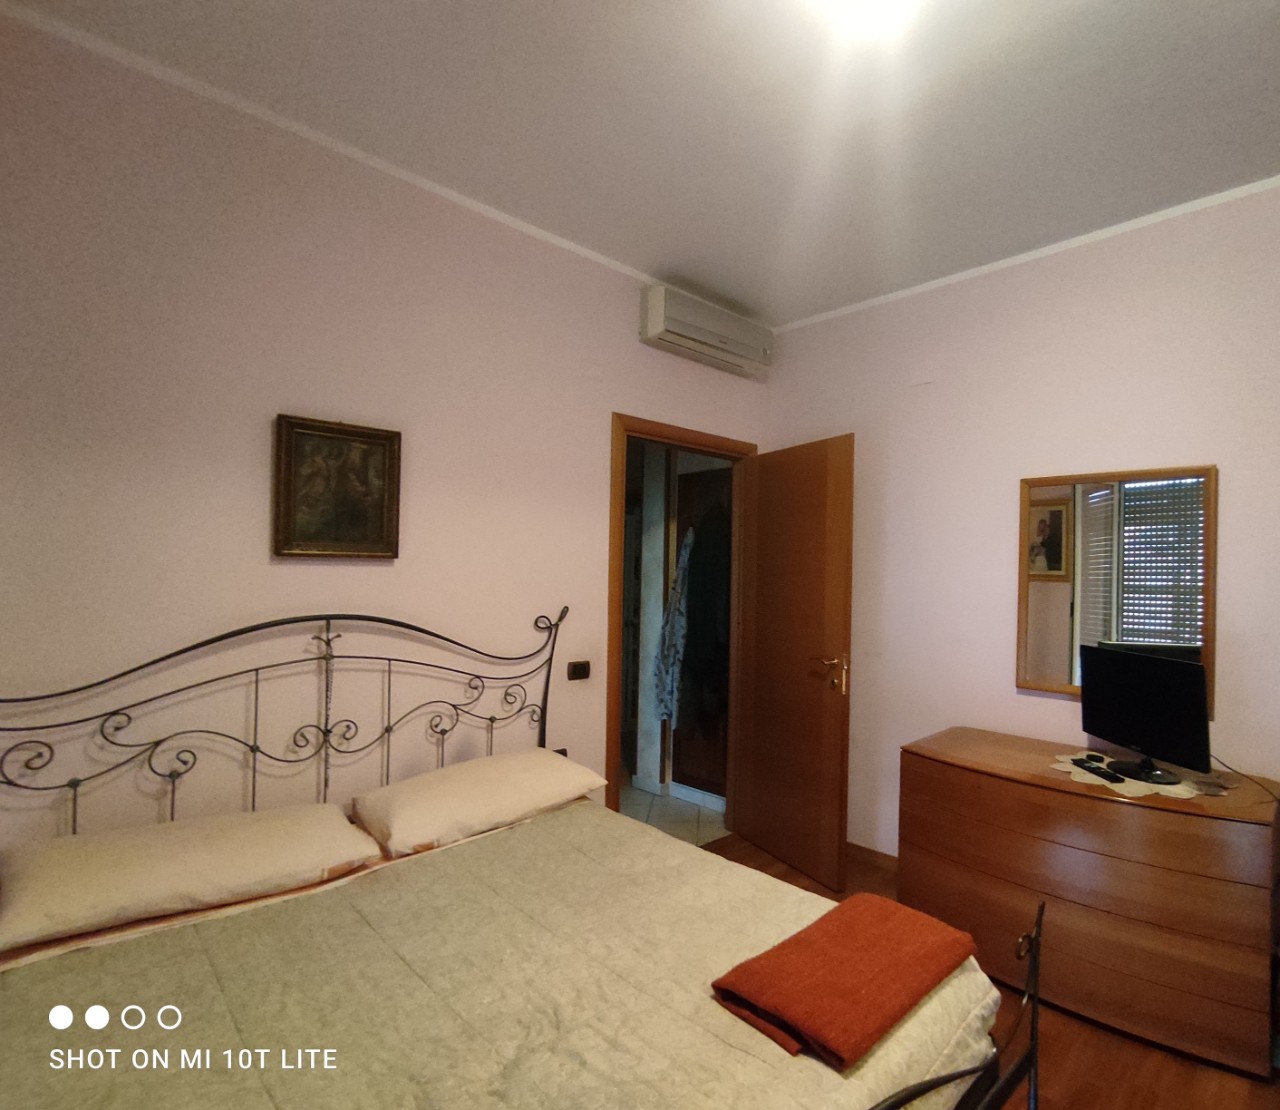 Appartamento in vendita Parma Zona Piazzale Pablo